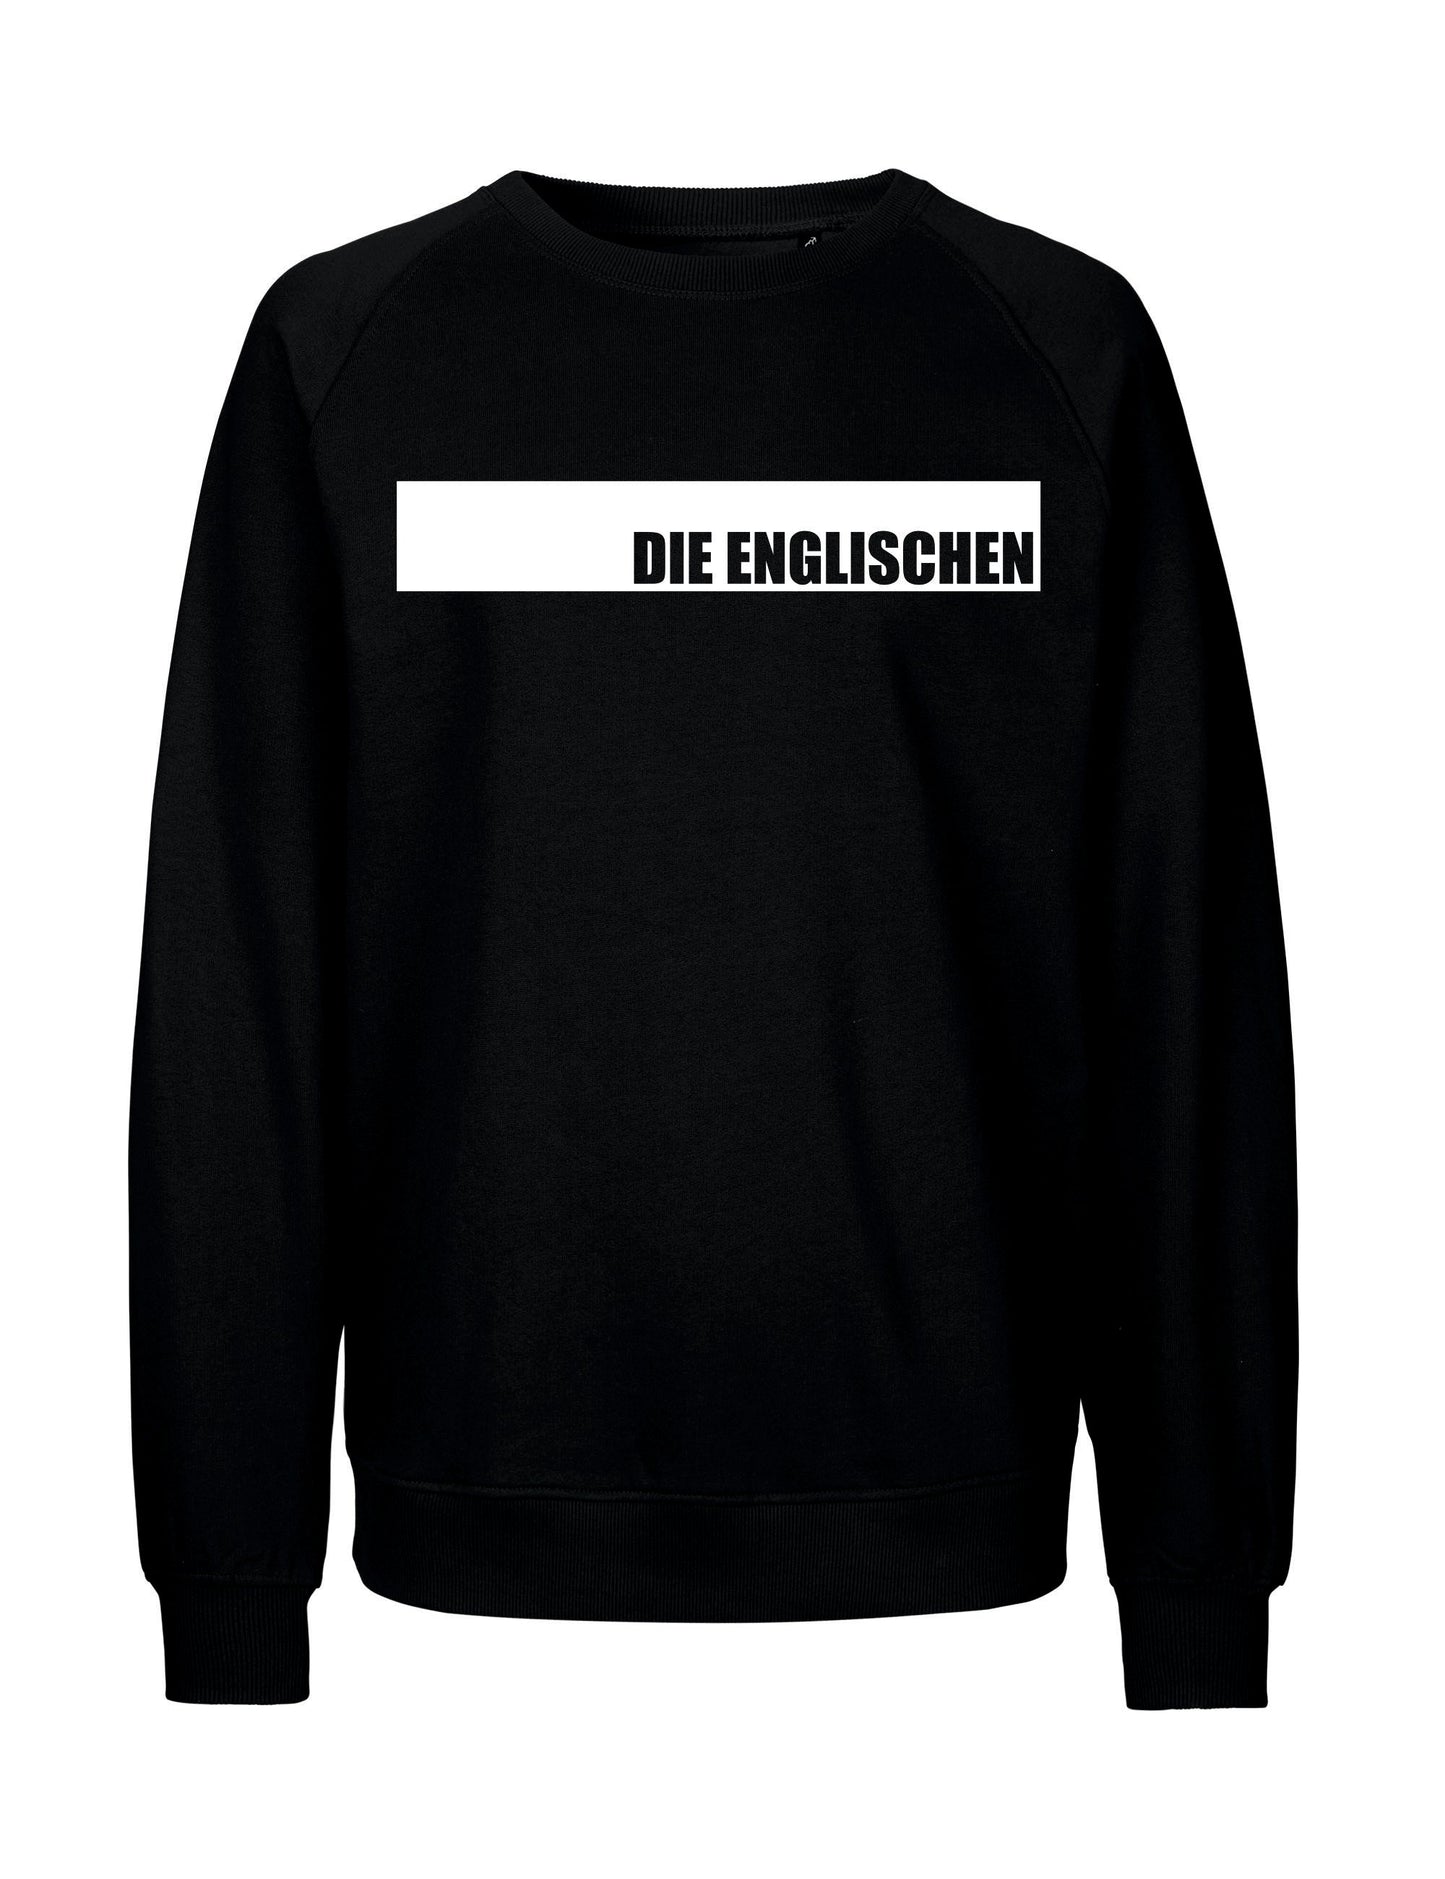 Sweatshirt mit Brustprint "DIE ENGLISCHEN" - Unisex